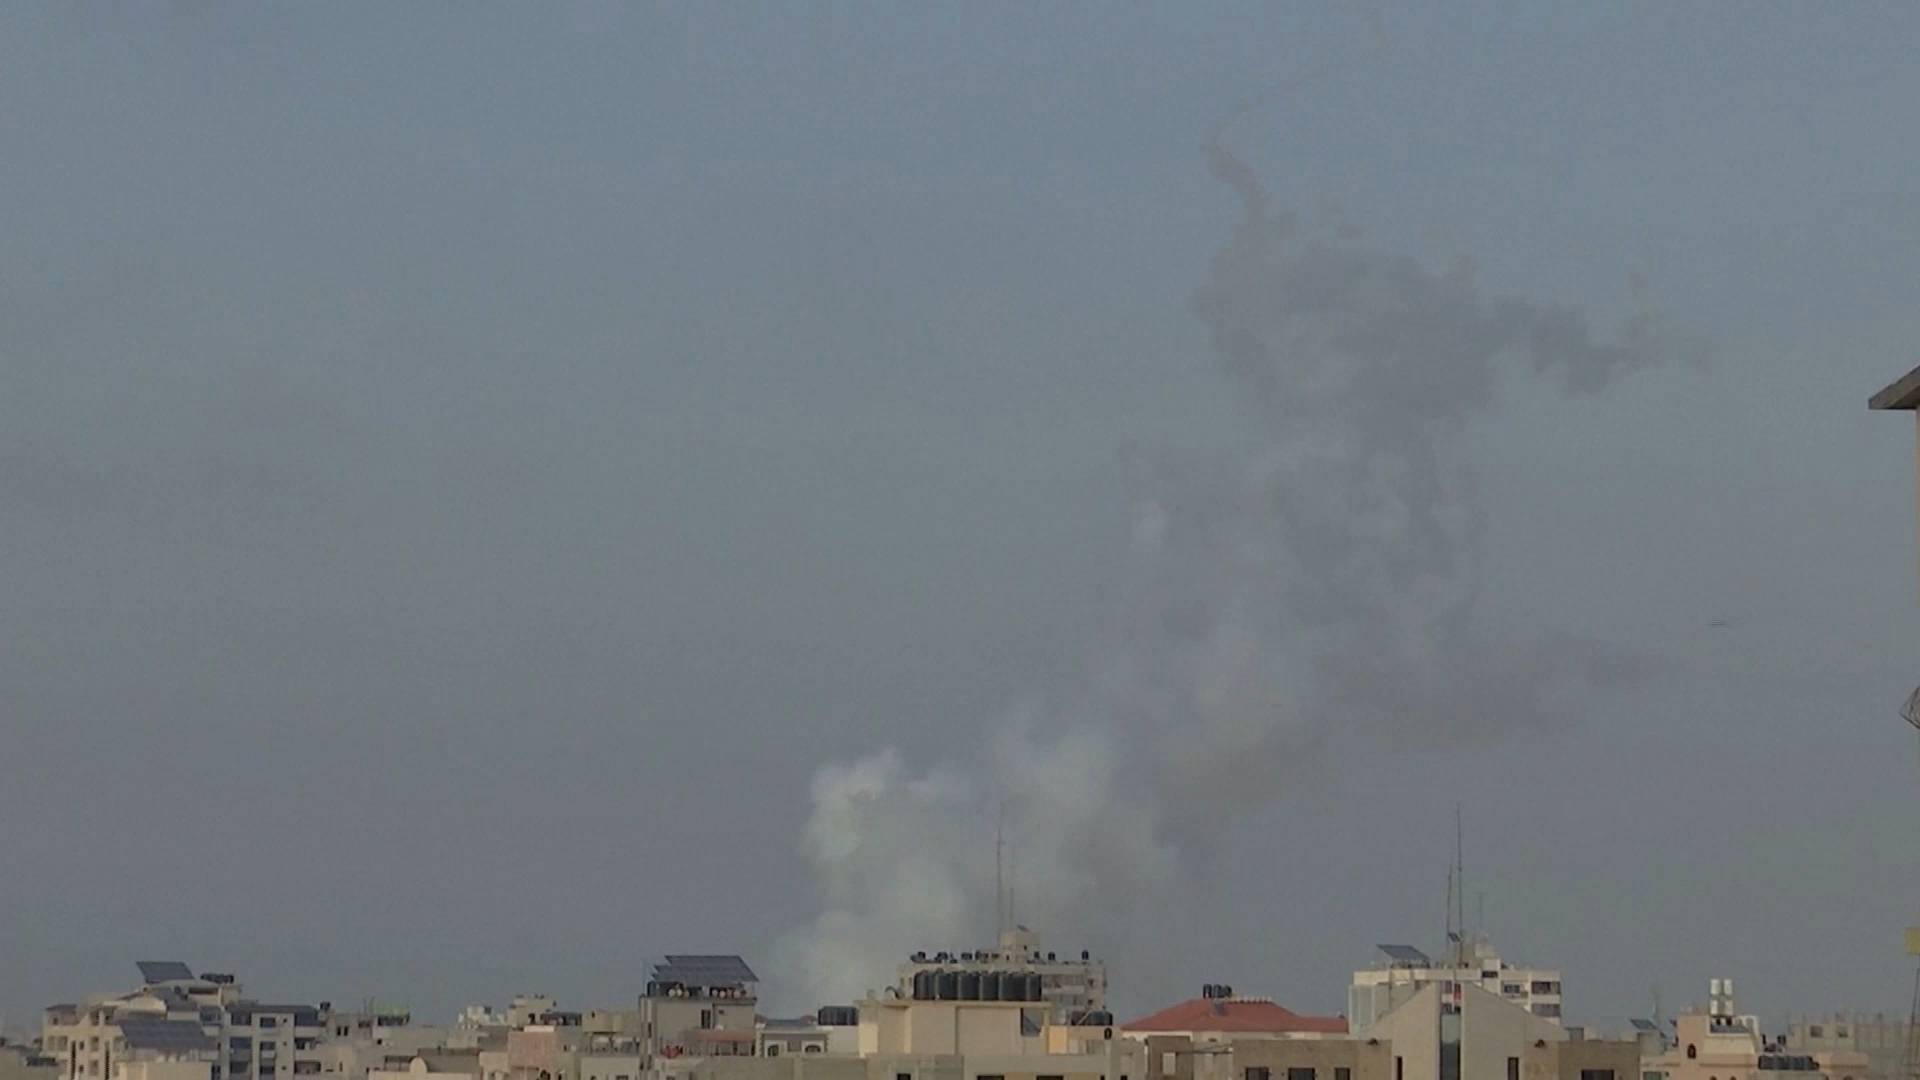 加沙地带武装人员向以色列发射火箭弹 以军空袭报复致数十人死伤